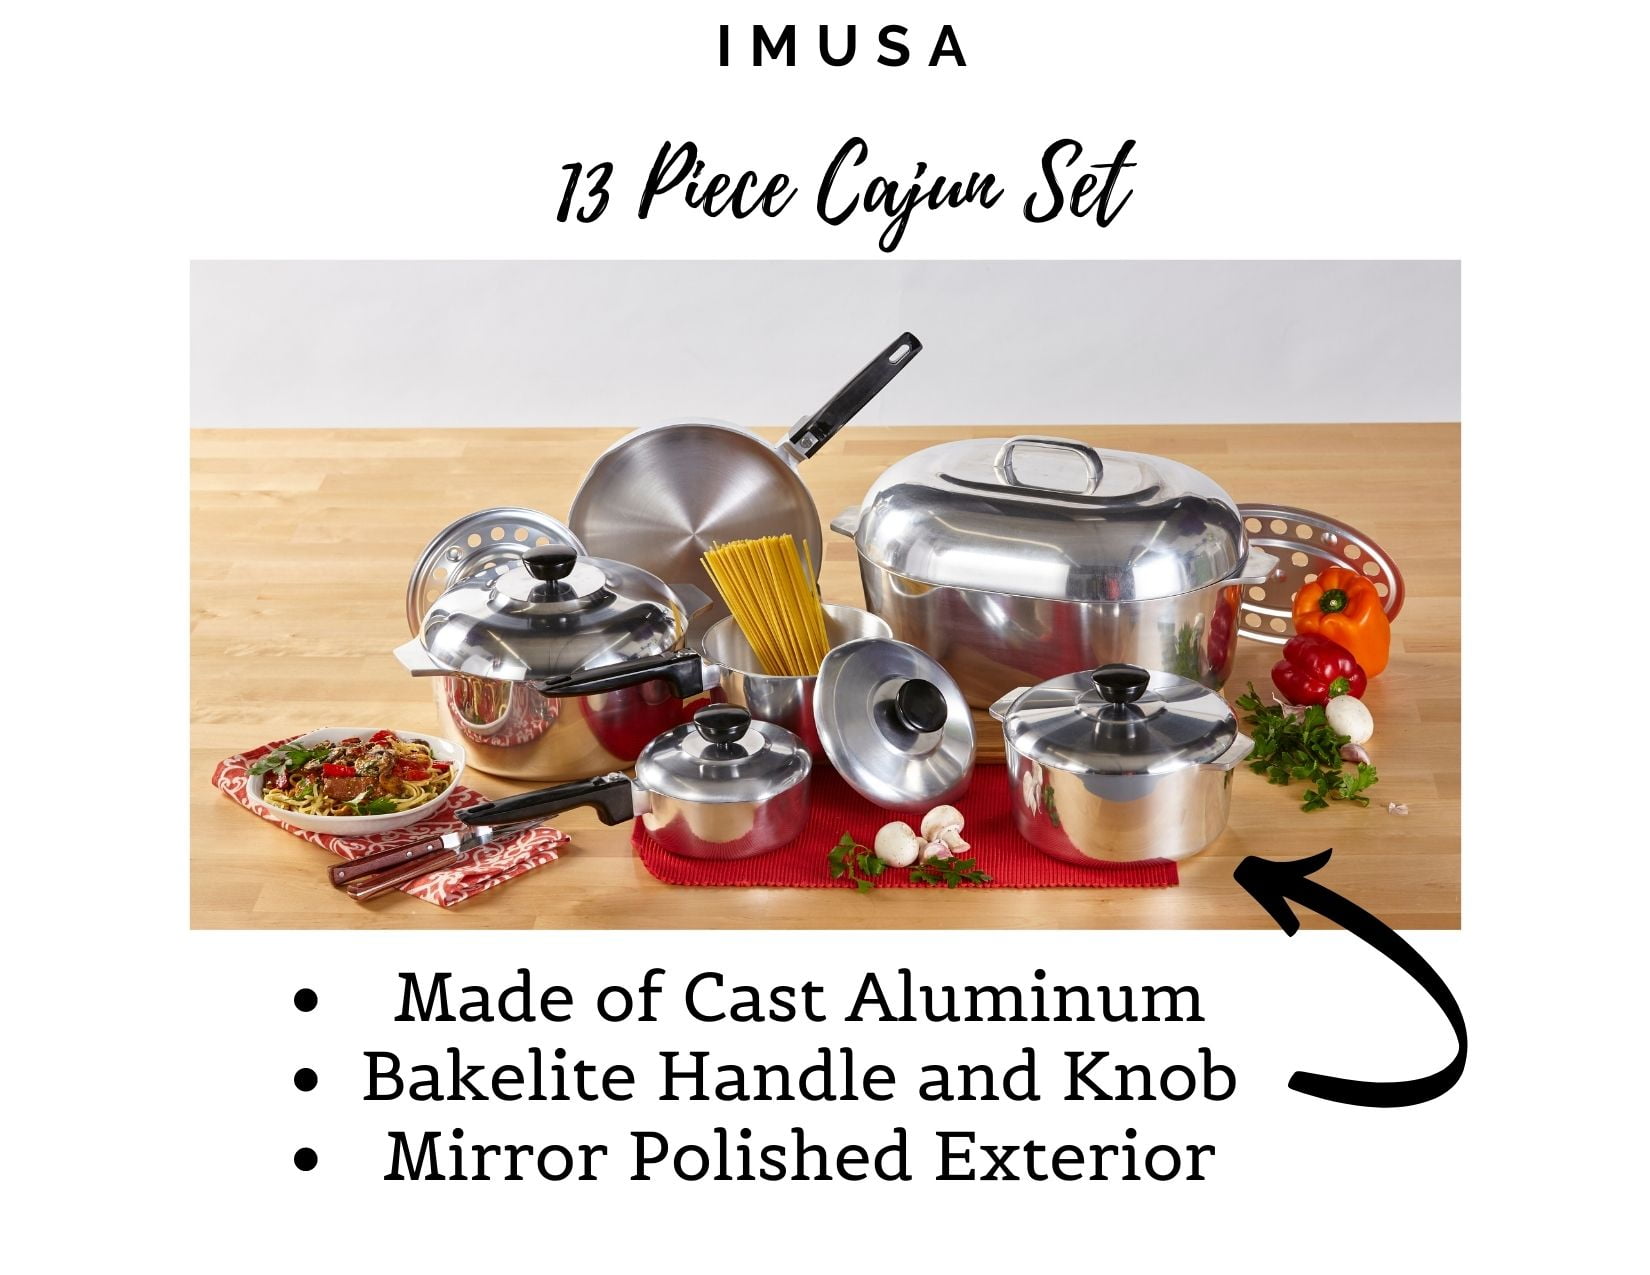 IMUSA IMUSA 13-Piece Cast Aluminum Cajun Cookware Set - IMUSA